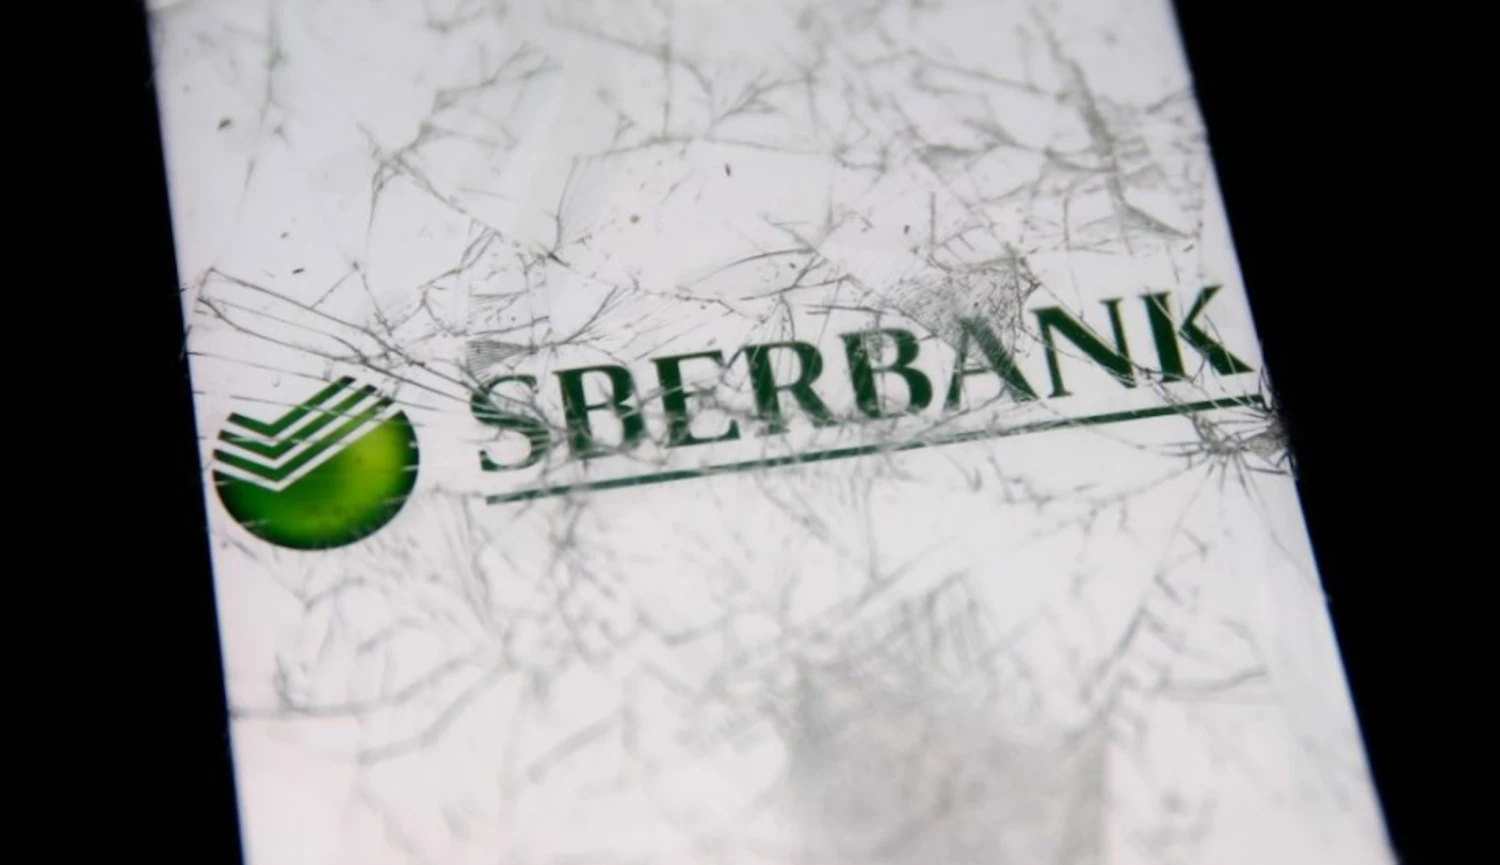 Sberbank opět vykázala rekordní zisk. Zotavuje se z následků západních sankcí